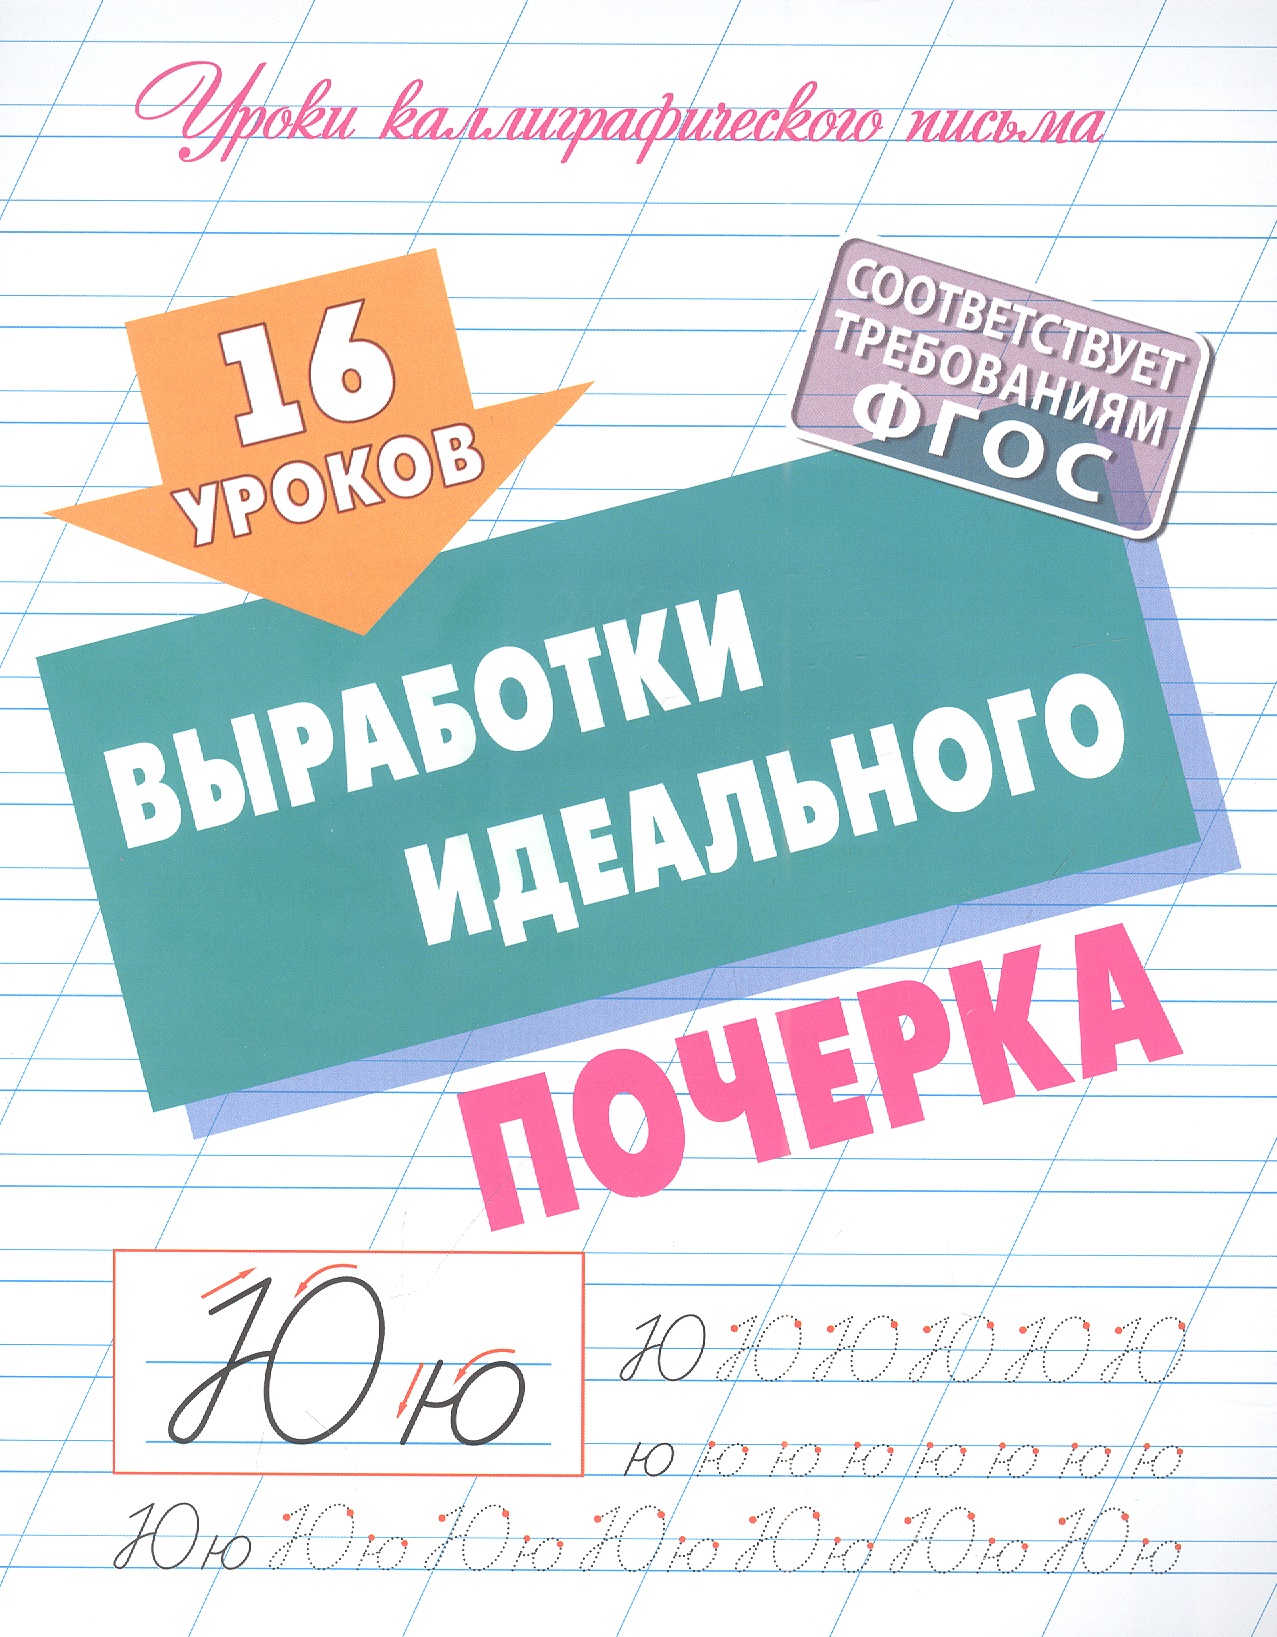 Петренко Станислав Викторович 16 уроков выработки идеального почерка уроки письма узоры прописи